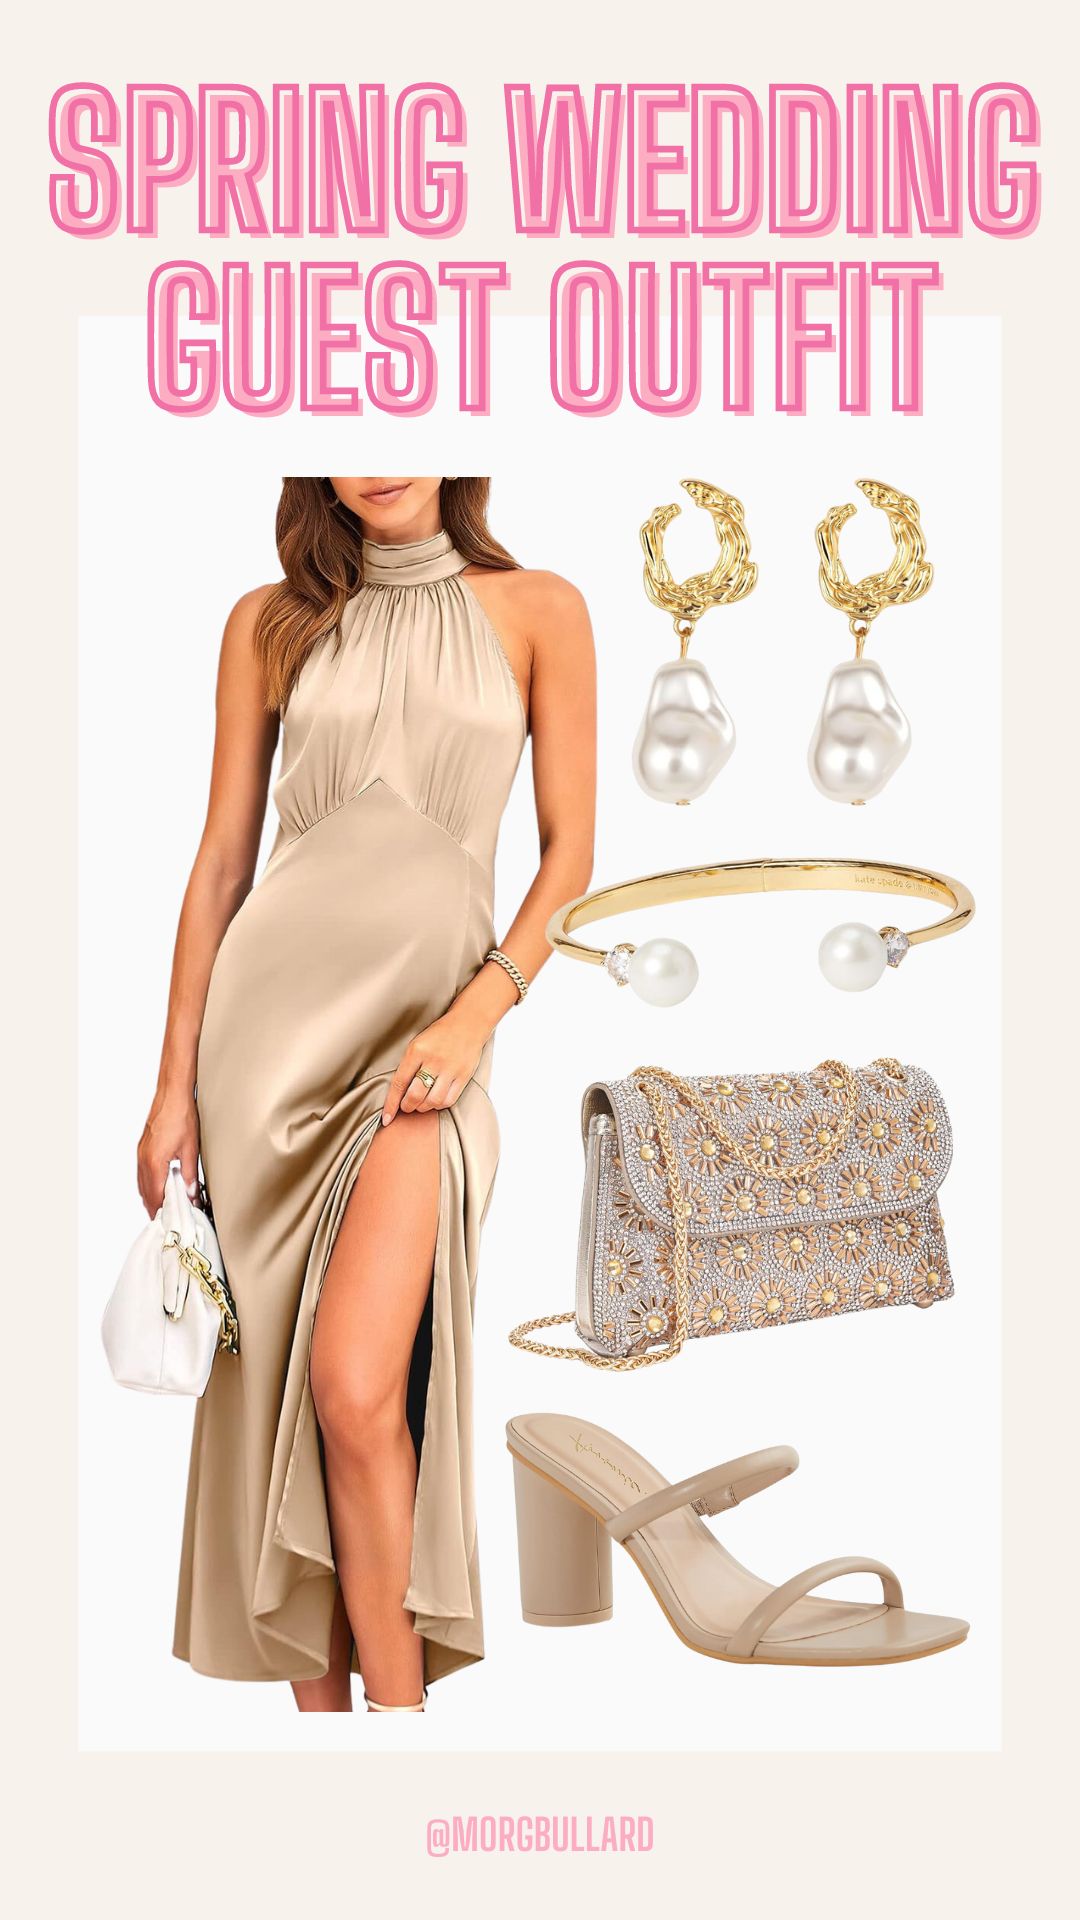 BTFBM Women Elegant Sleeveless Summer Dresses 2023 Halter Neck Backless Satin Dresses Split Solid... | Amazon (US)